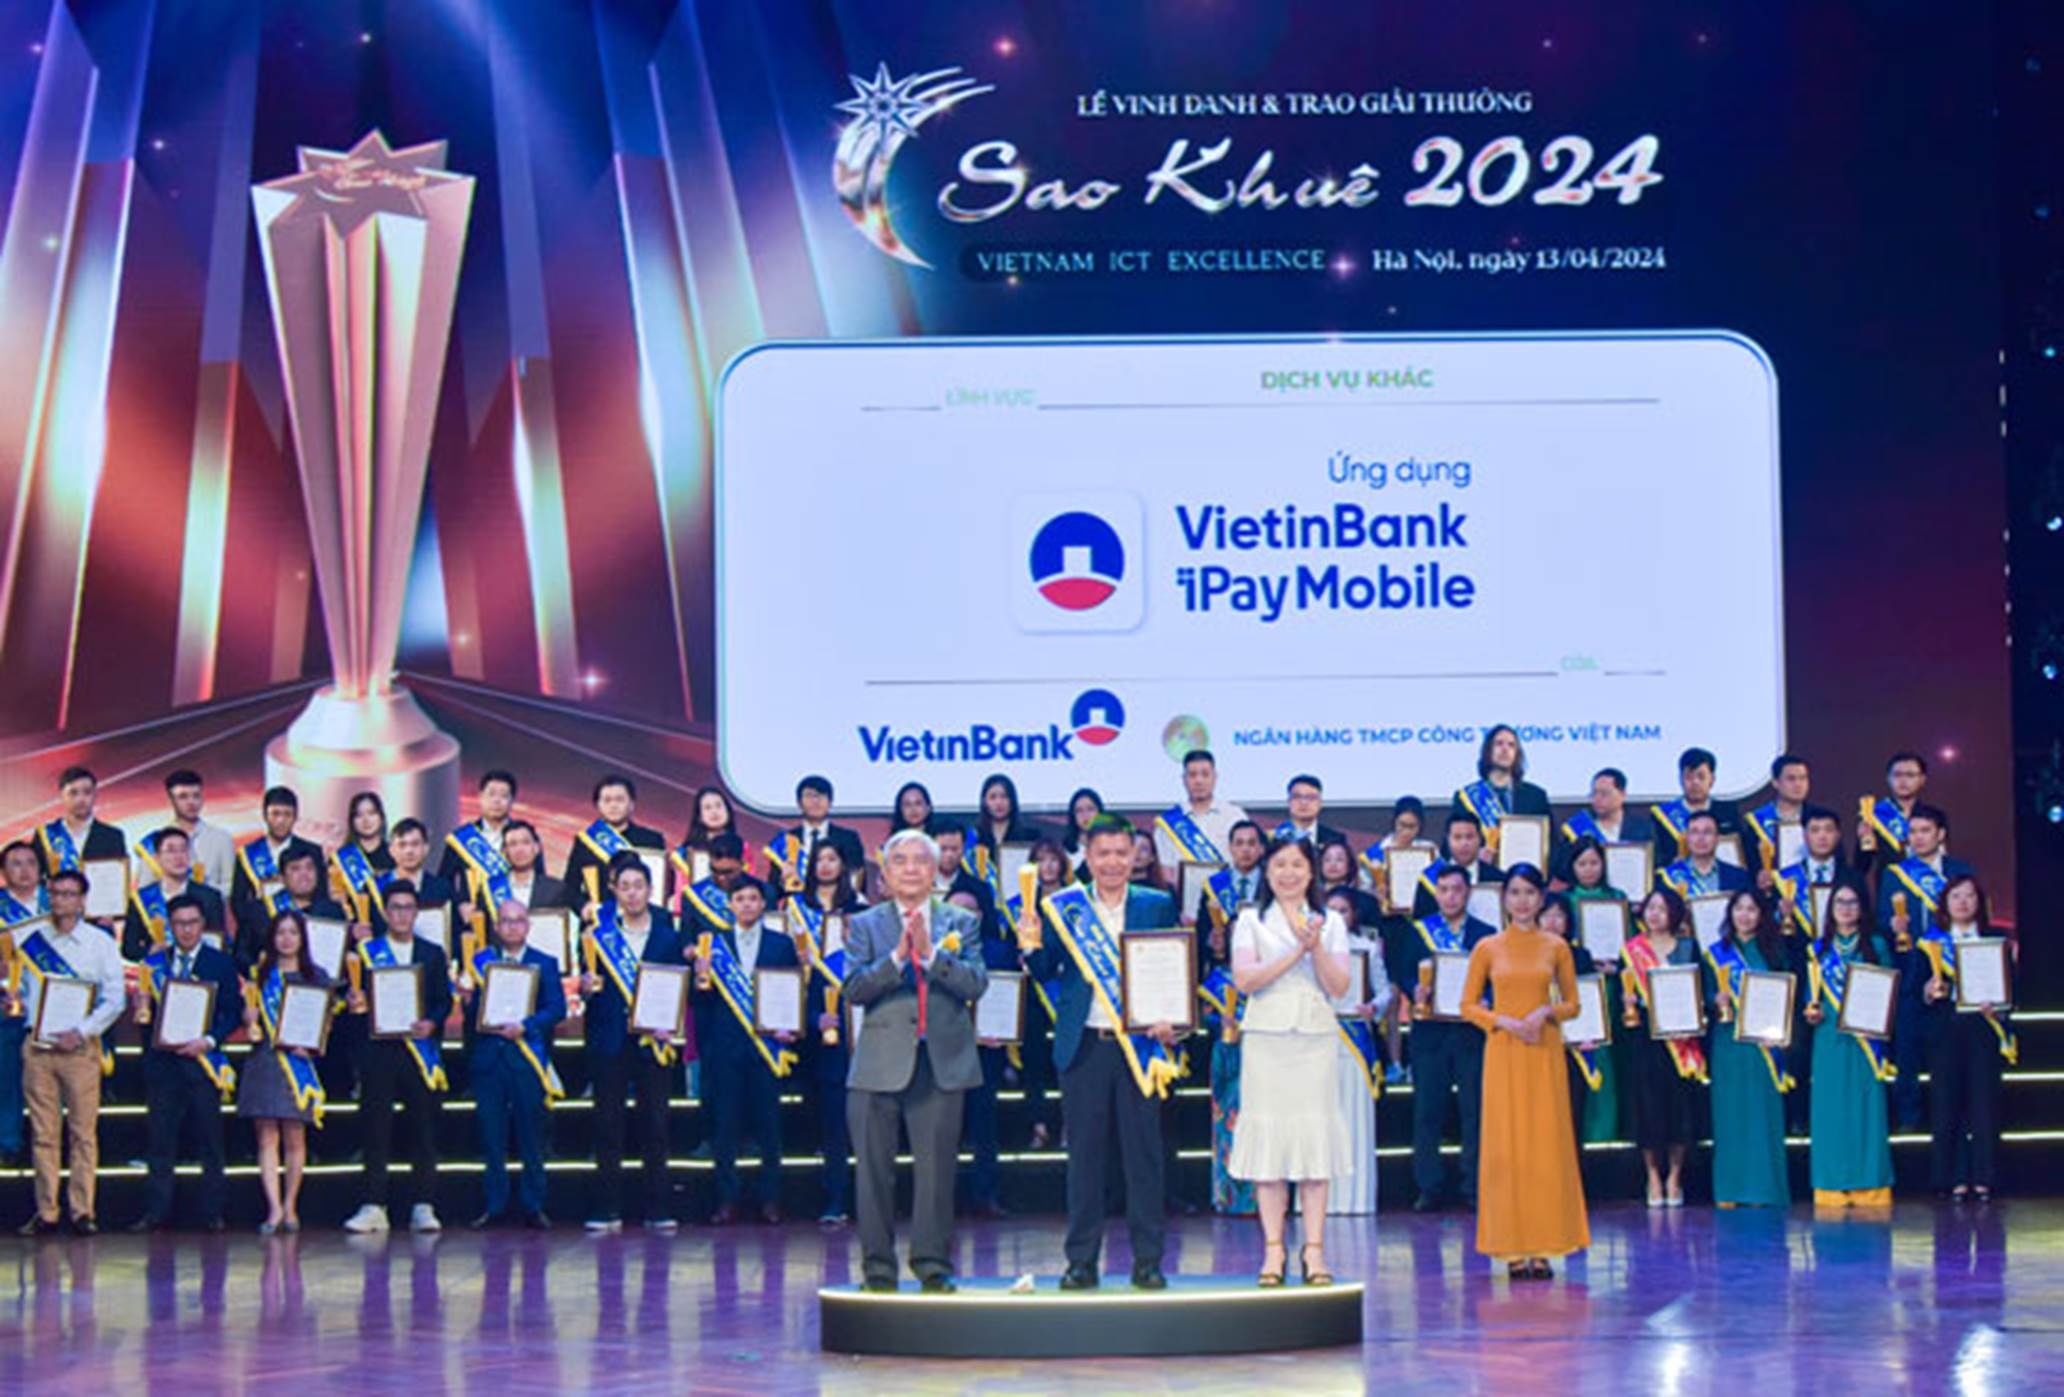 Ông Lê Anh Tuấn - Phó Phòng Ngân hàng số, Khối Bán lẻ VietinBank nhận Giải thưởng Sao Khuê cho Ứng dụng Ngân hàng số VietinBank iPay Mobile